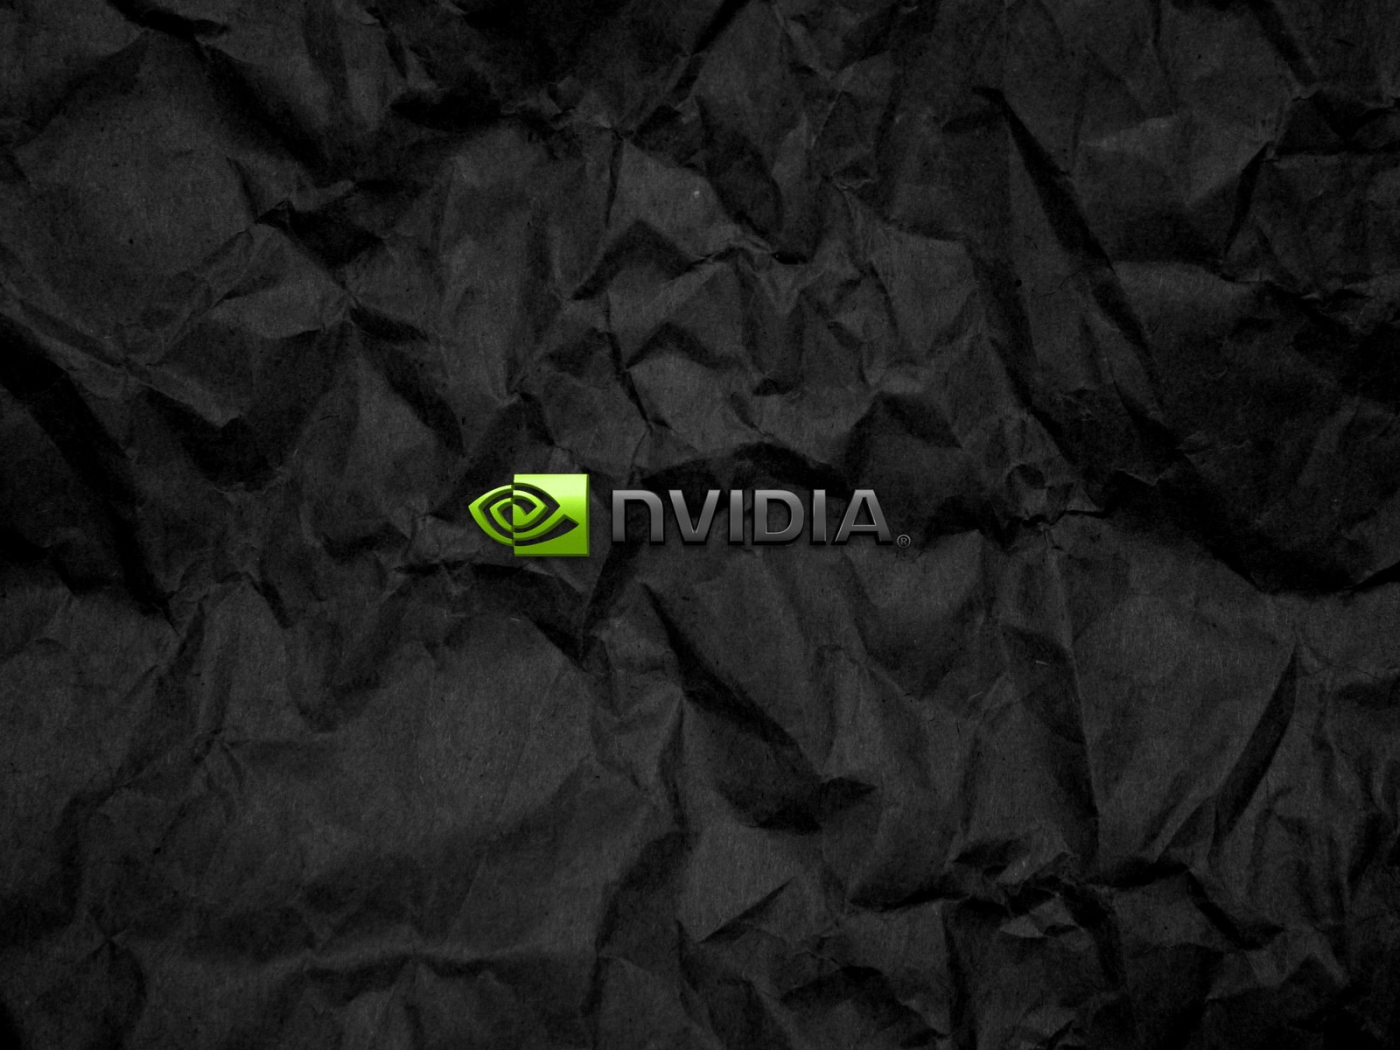 1400x1050 Tượng trưng Nvidia trên giấy đen nhàu nát Hình nền máy tính 1400x1050